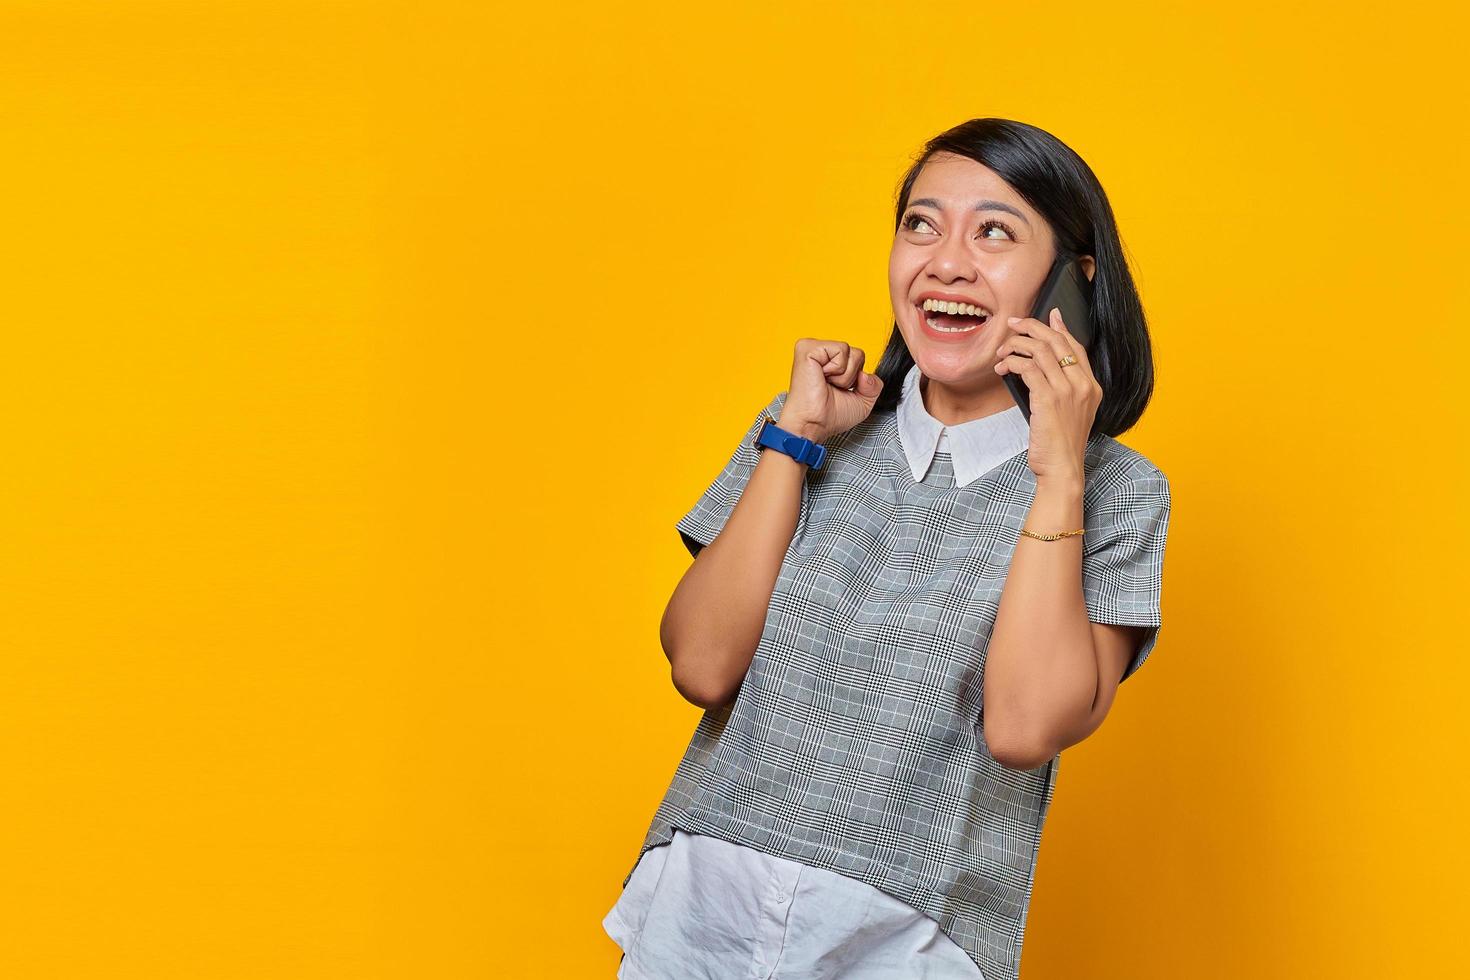 opgewonden jonge aziatische vrouw die inkomende oproep op smartphone ontvangt en opzij kijkt op gele achtergrond foto